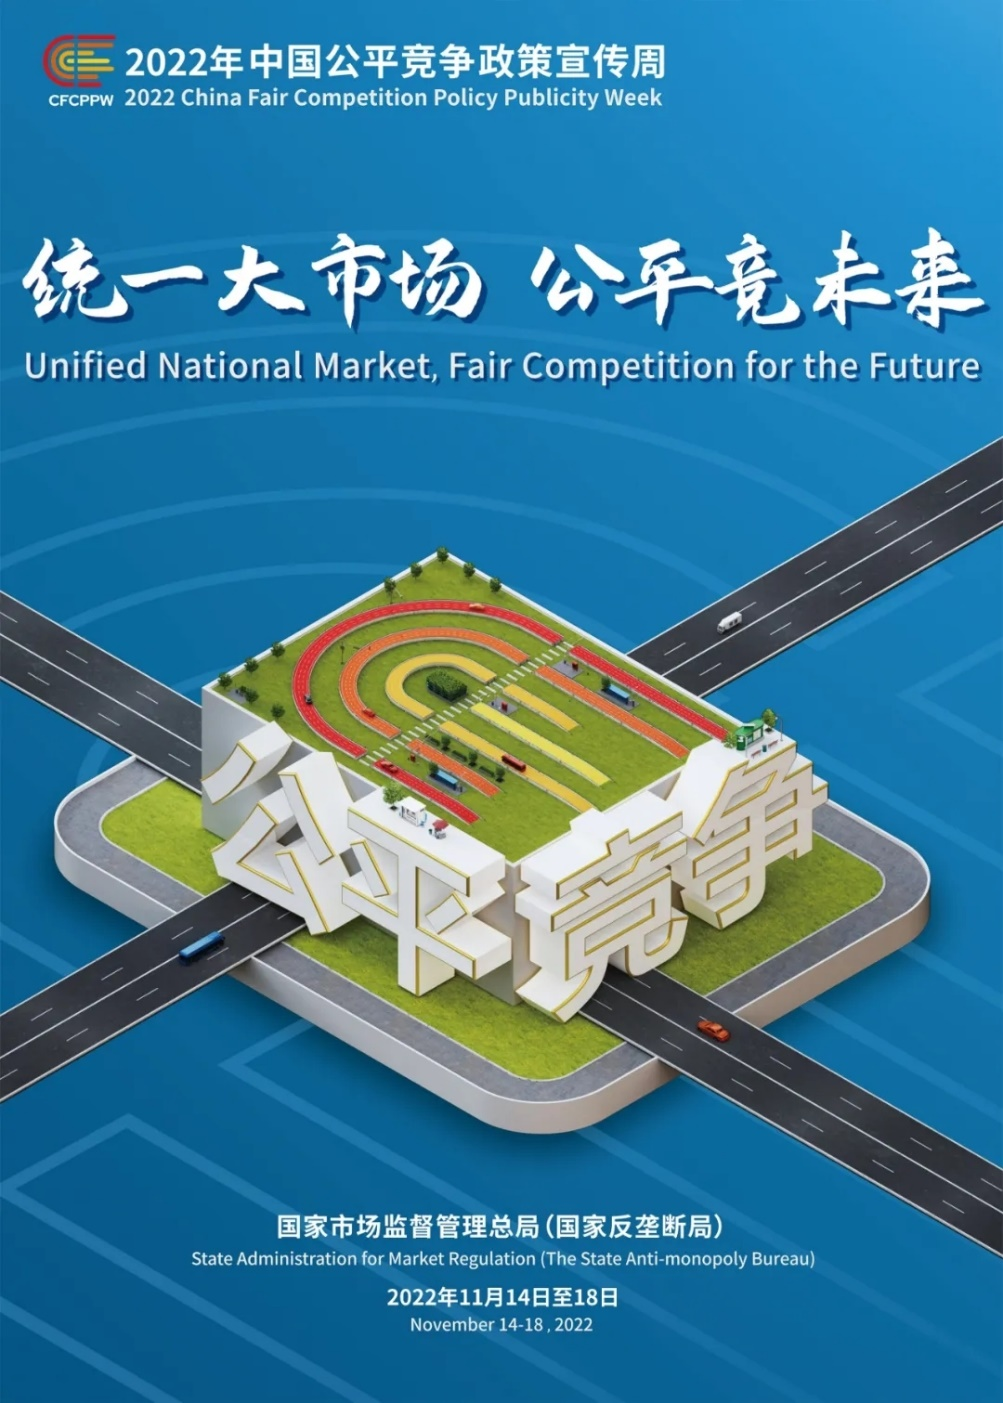 “统一大市场 公平竞未来” ——2022年中国公平竞争*策宣传周活动